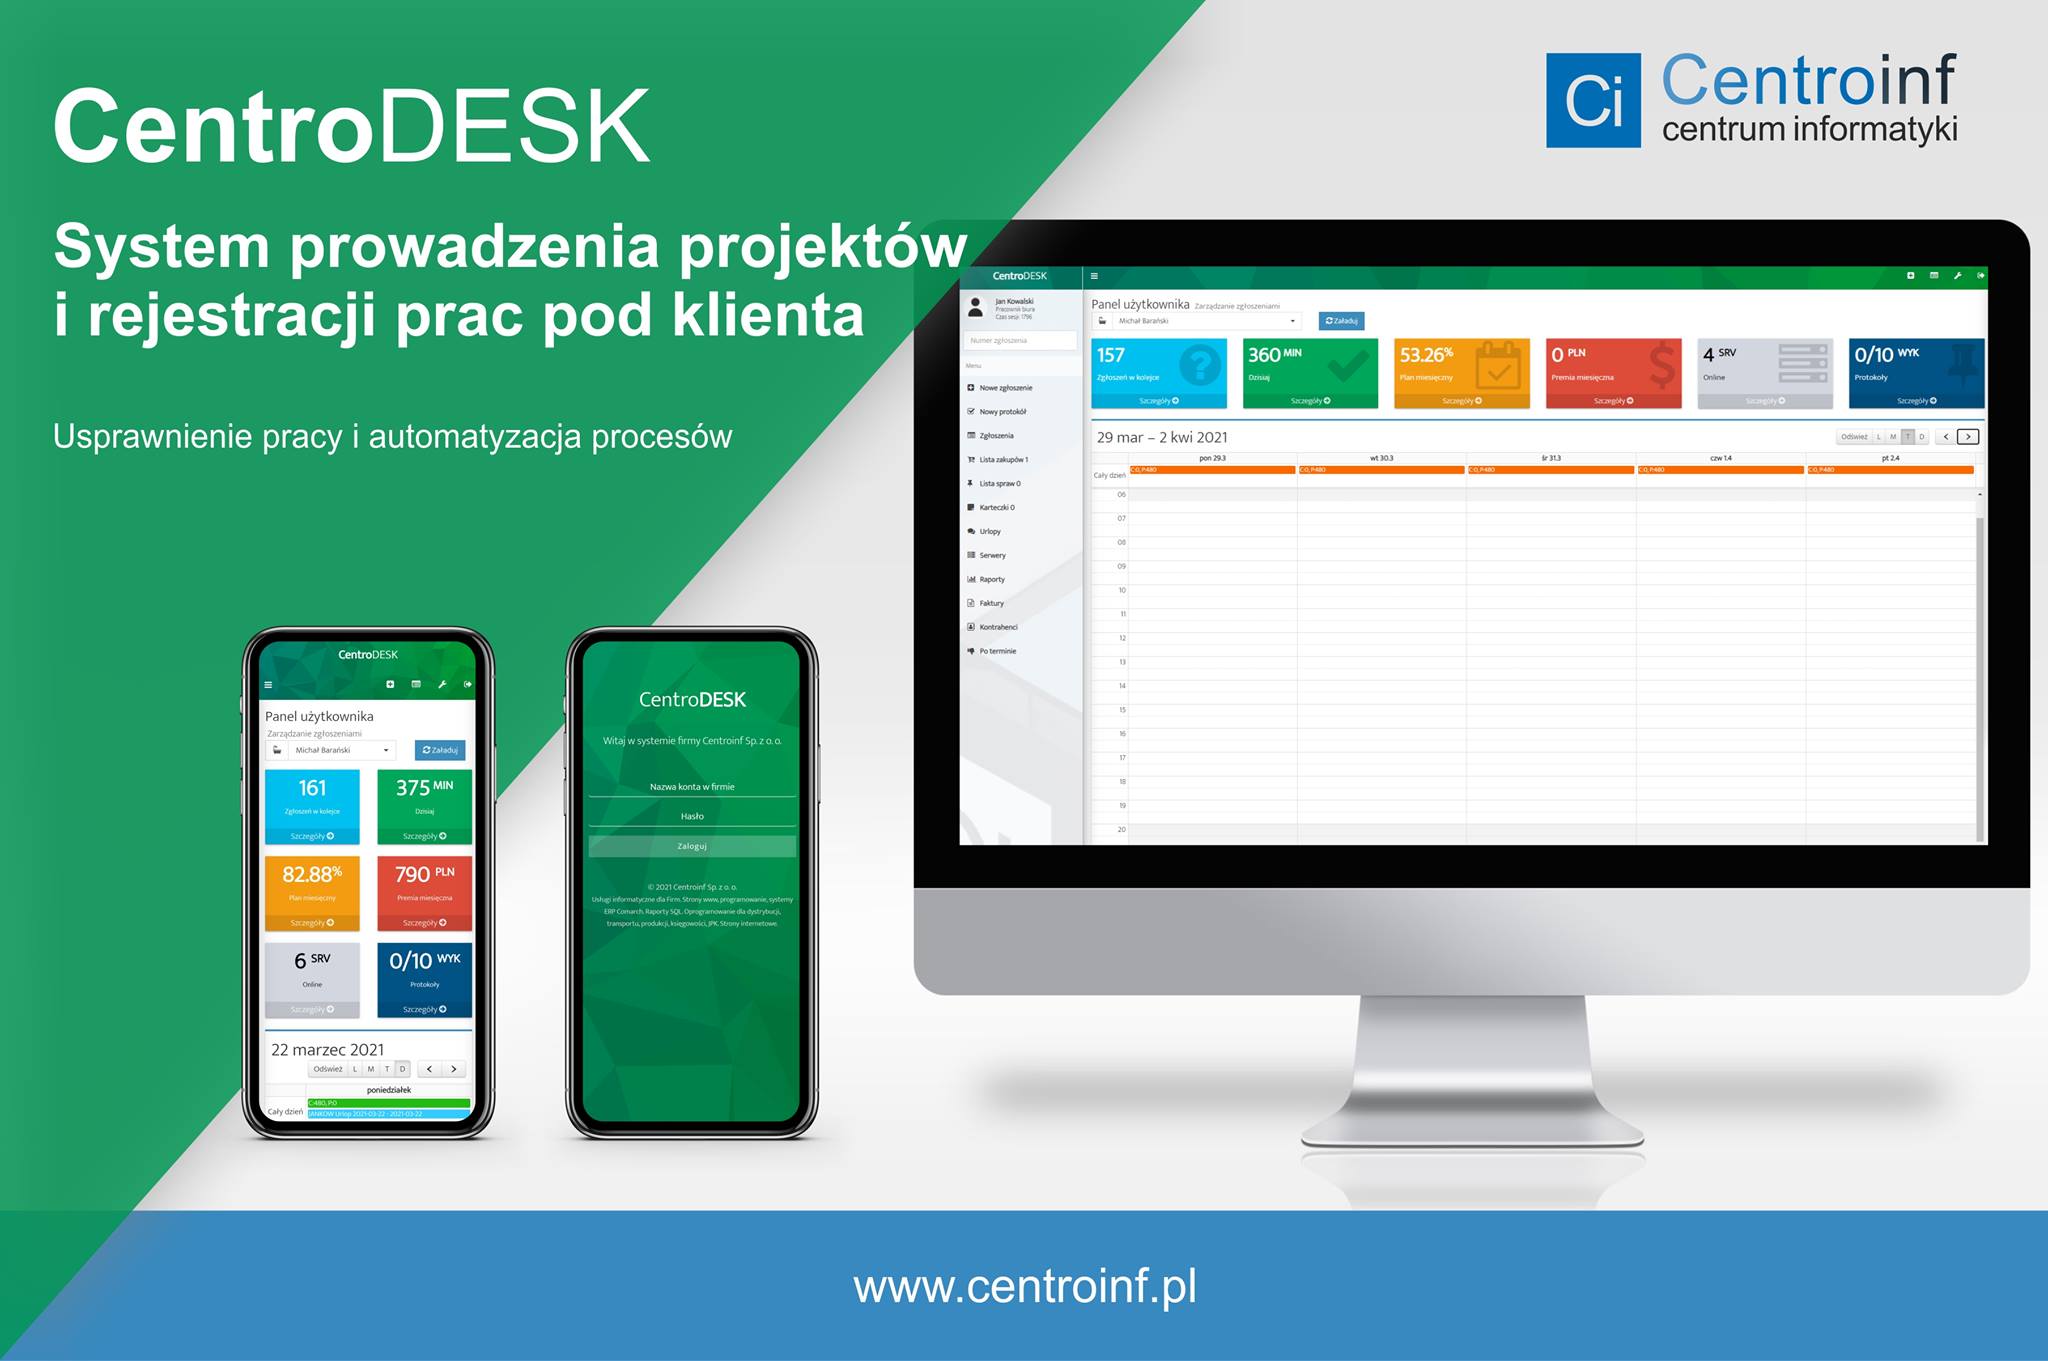 CentroDESK - work time registration system.